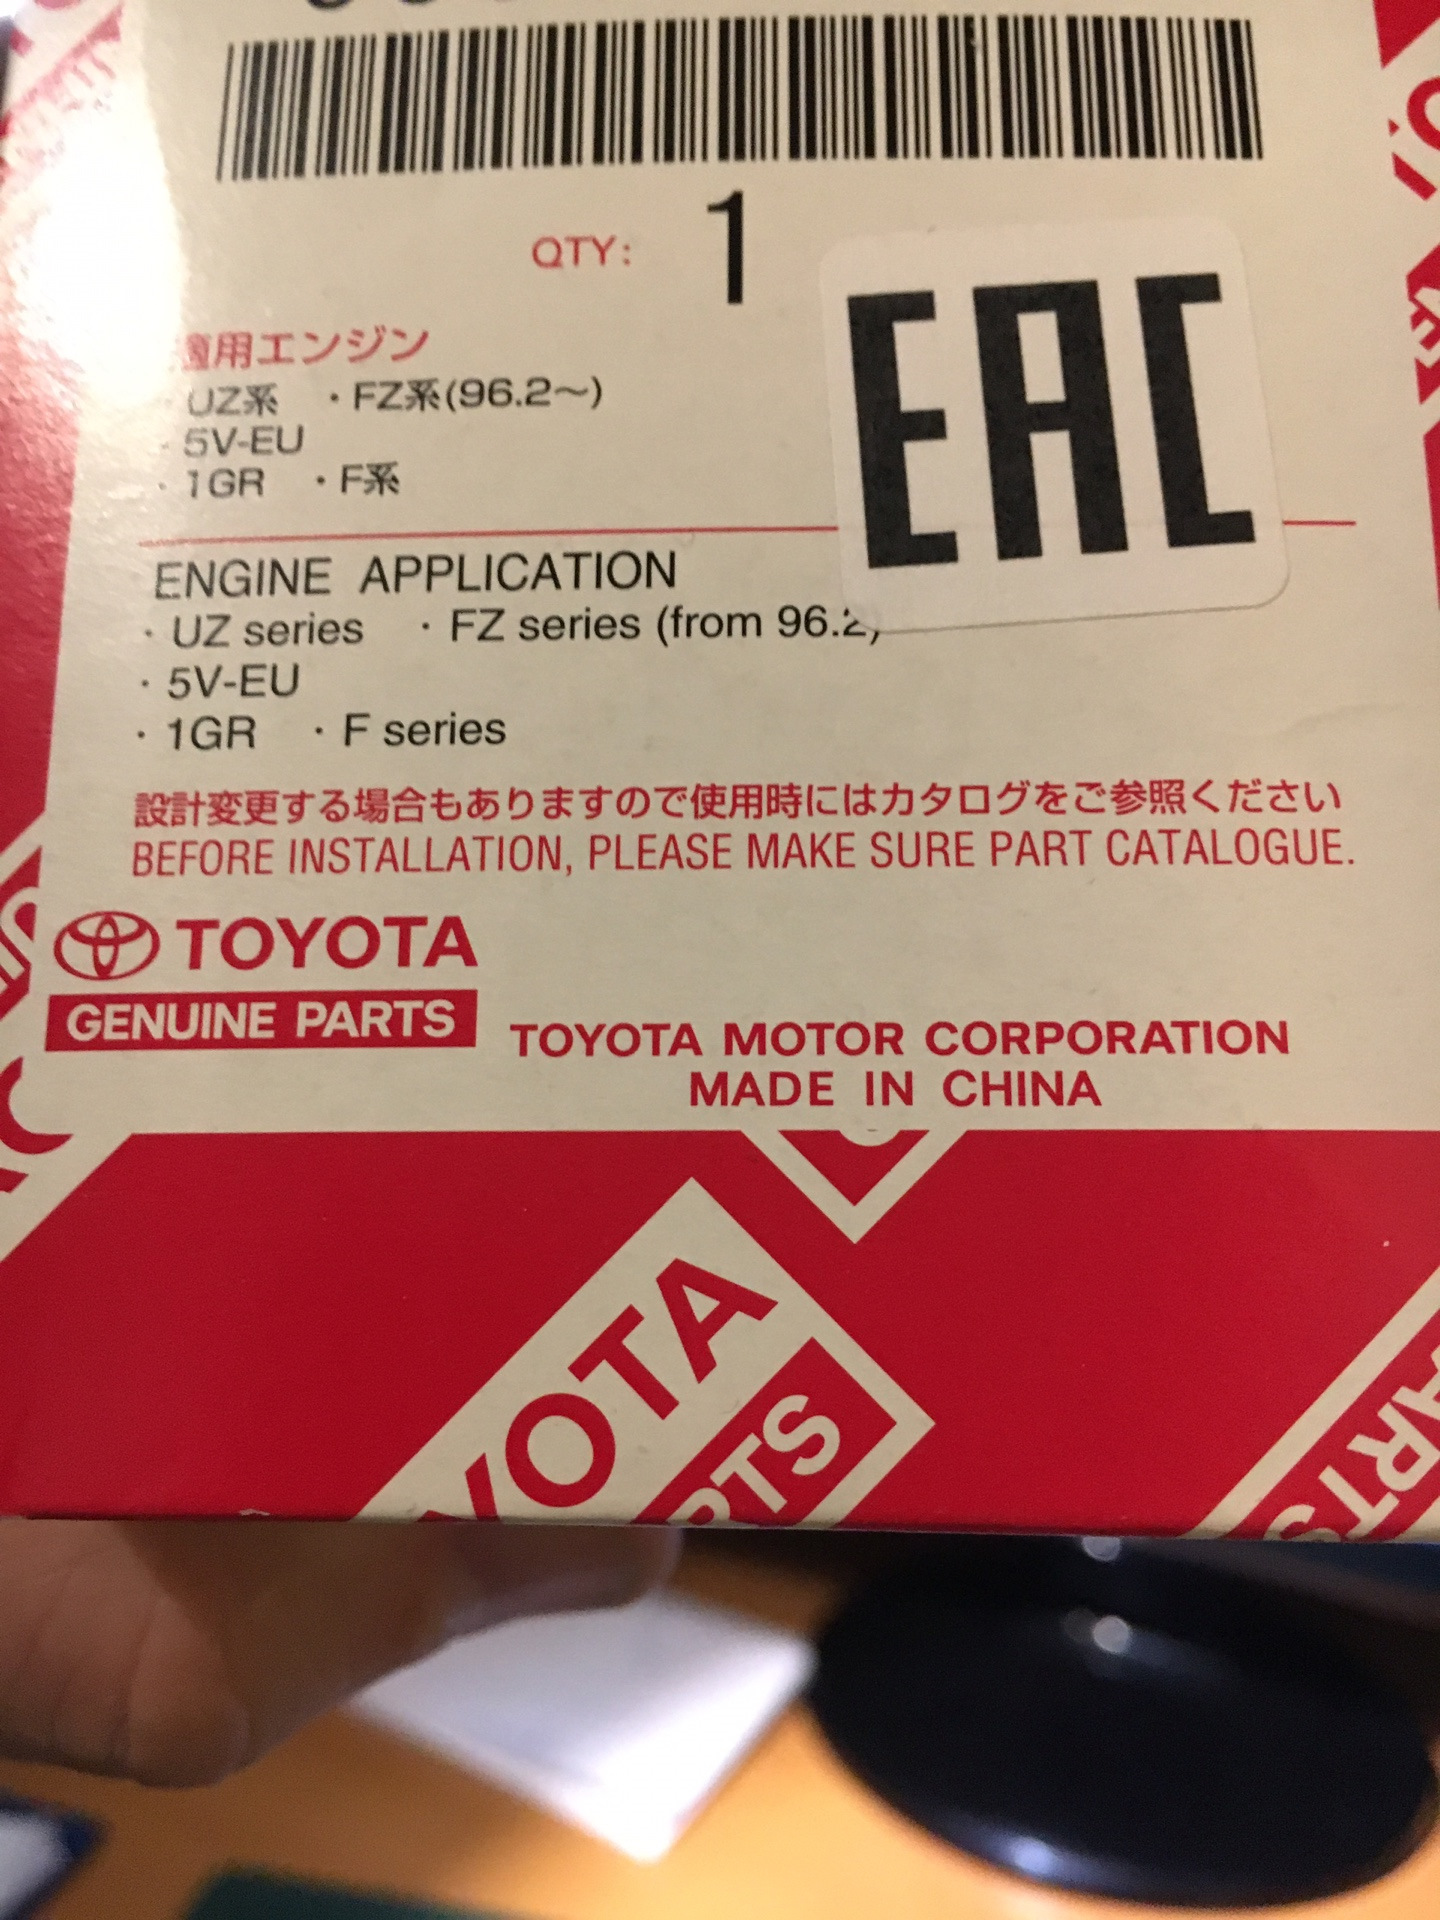 Где купить оригинал форум. Оригинальные запчасти Toyota. Запчасти Toyota made in Vietnam. Оригинальная упаковка запчастей Тойота. Оригинальные коробка запчастей Тойота.